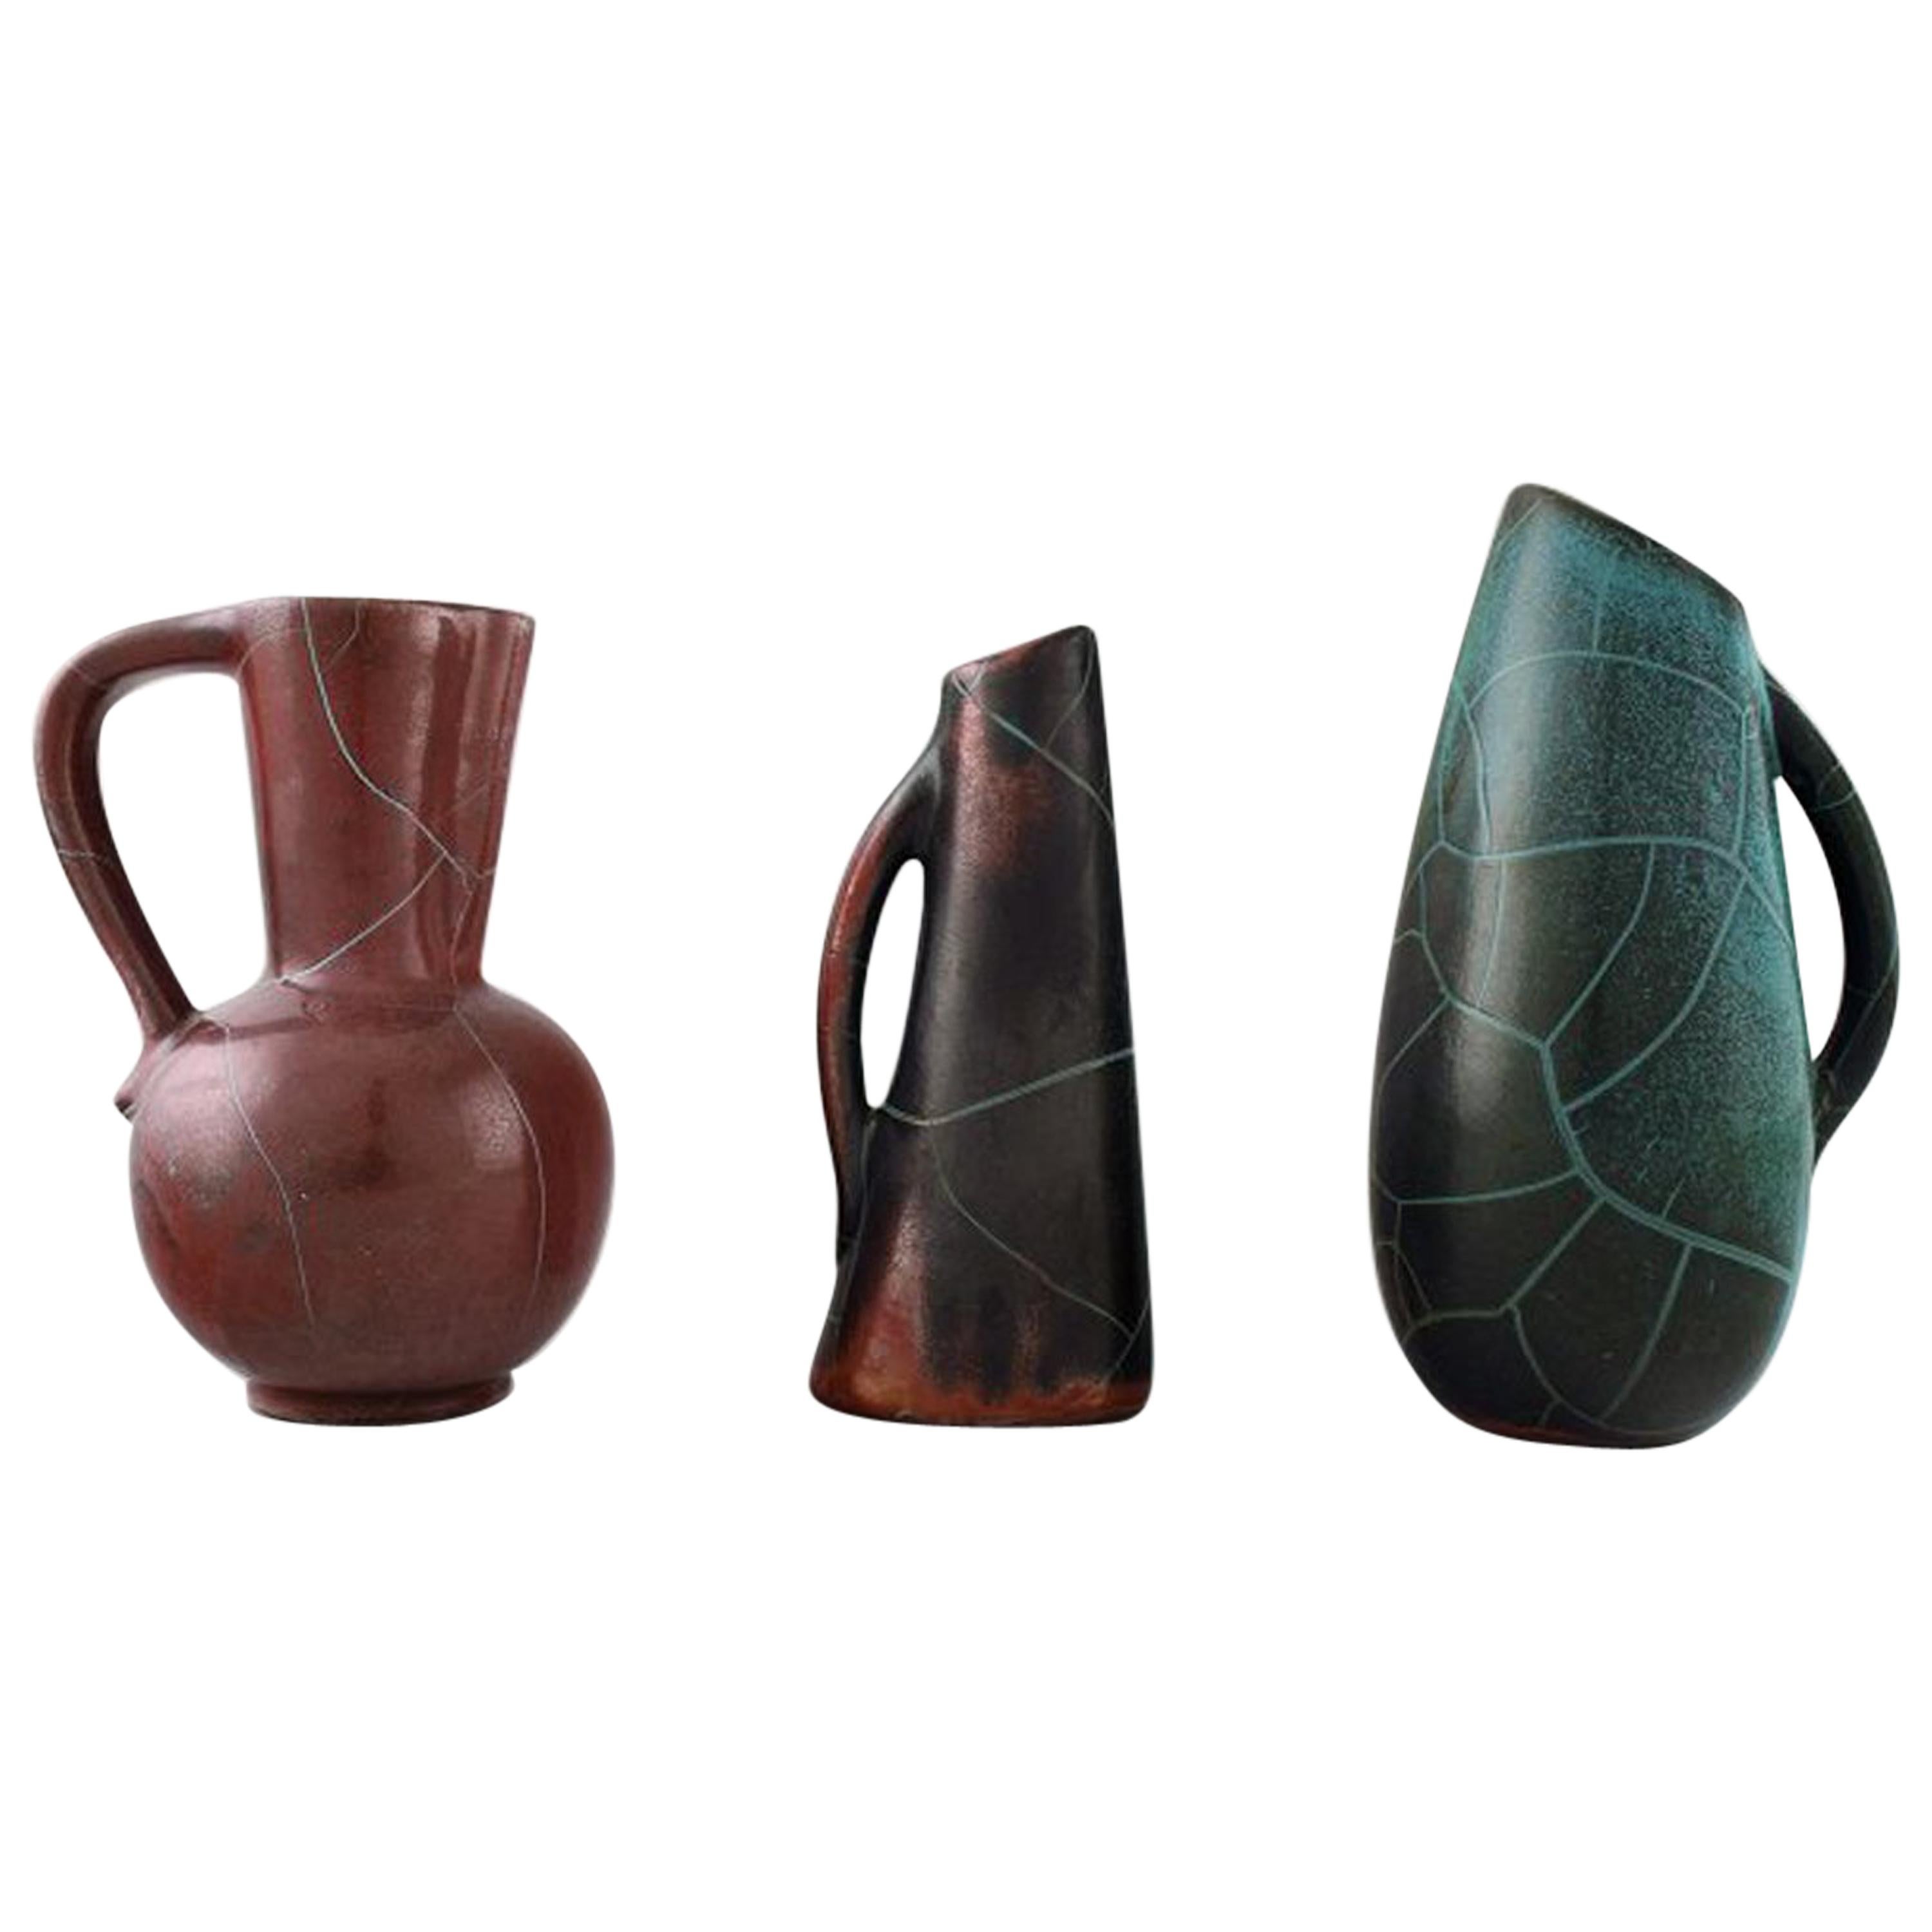 Richard Uhlemeyer, German Ceramist, Collection of Ceramic Jugs or Vases